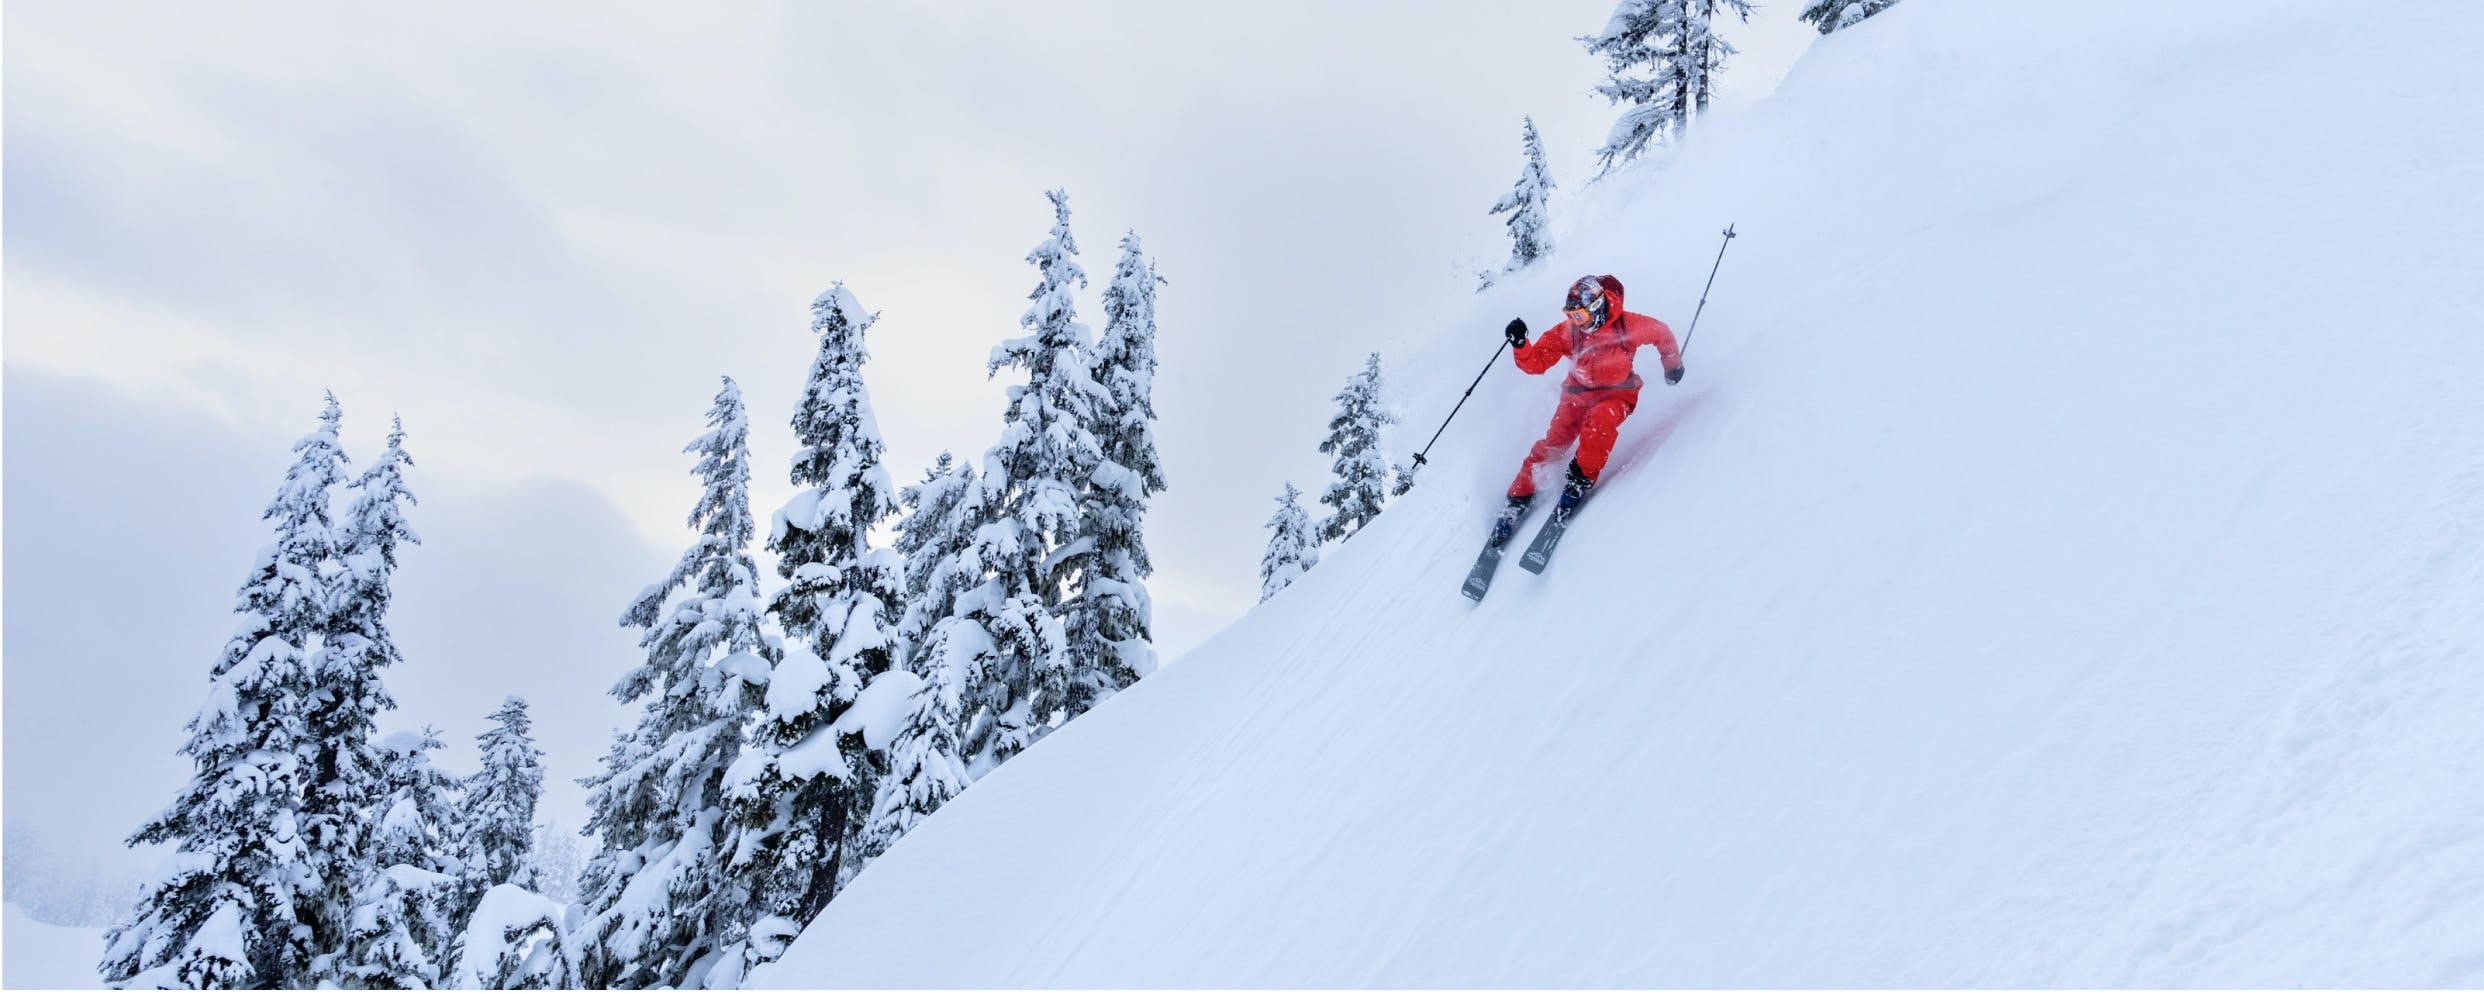 Découvrez nos services de pose de fixation et de thermoformage des chaussons, ainsi que nos rabais sur les skis de fond.